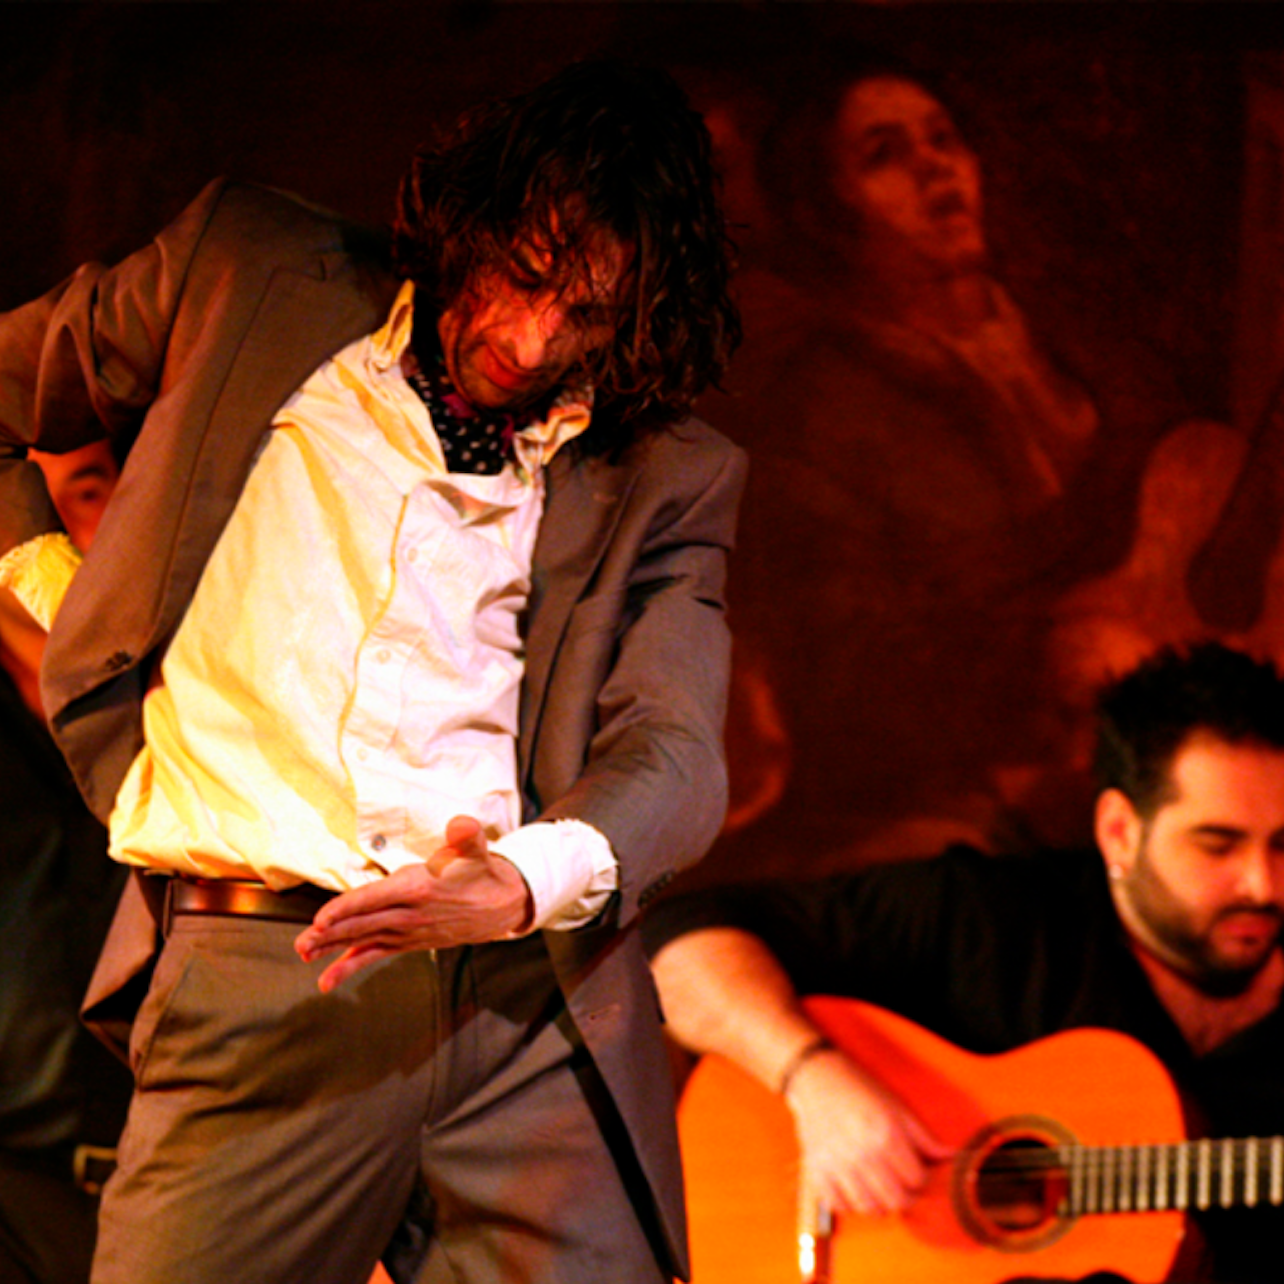 Corral de la Morería: Espectáculo de flamenco + Cena - Alojamientos en Madrid